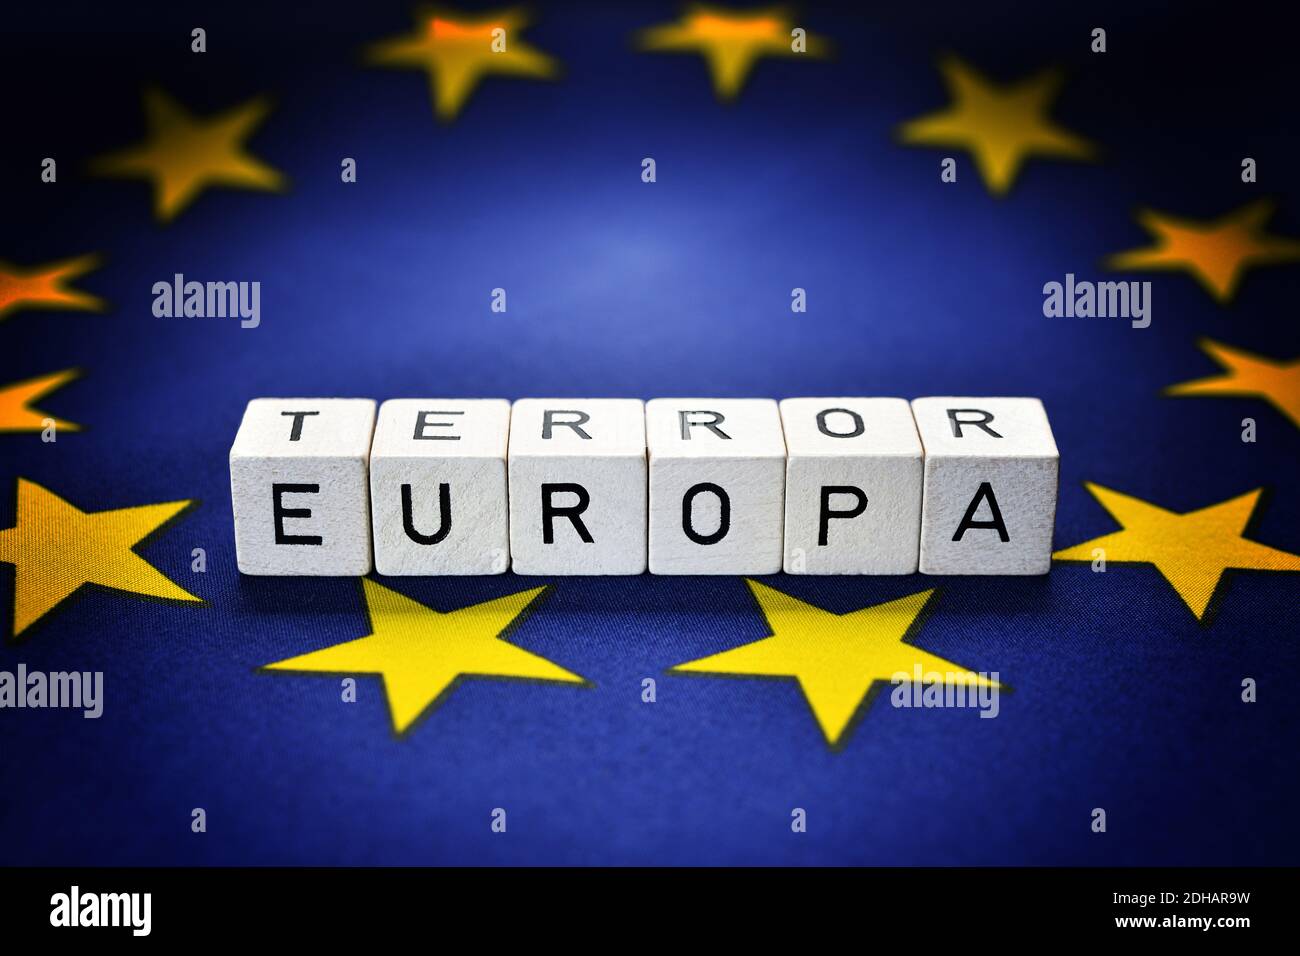 FOTOMONTAGE, Buchstaben bilden die Schriftzüge Europa und Terror auf einer EU-Fahne, Terrorgefahr in Europa Stock Photo